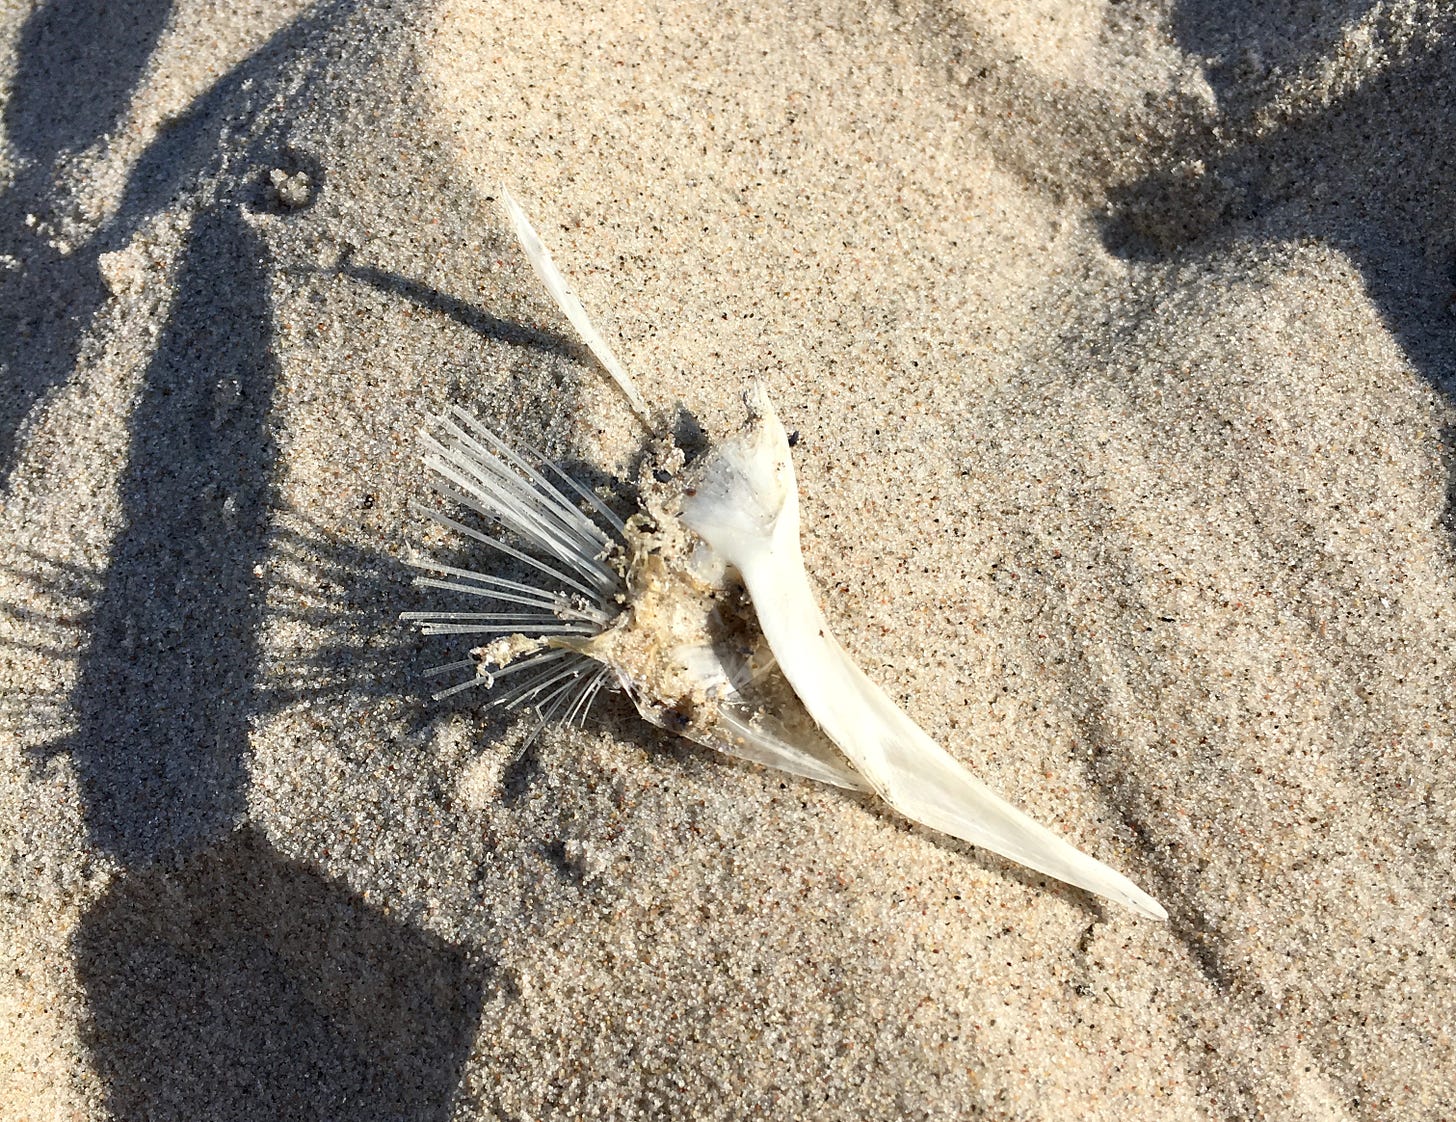 Der saubere Schädel eines Vogels liegt im Sand